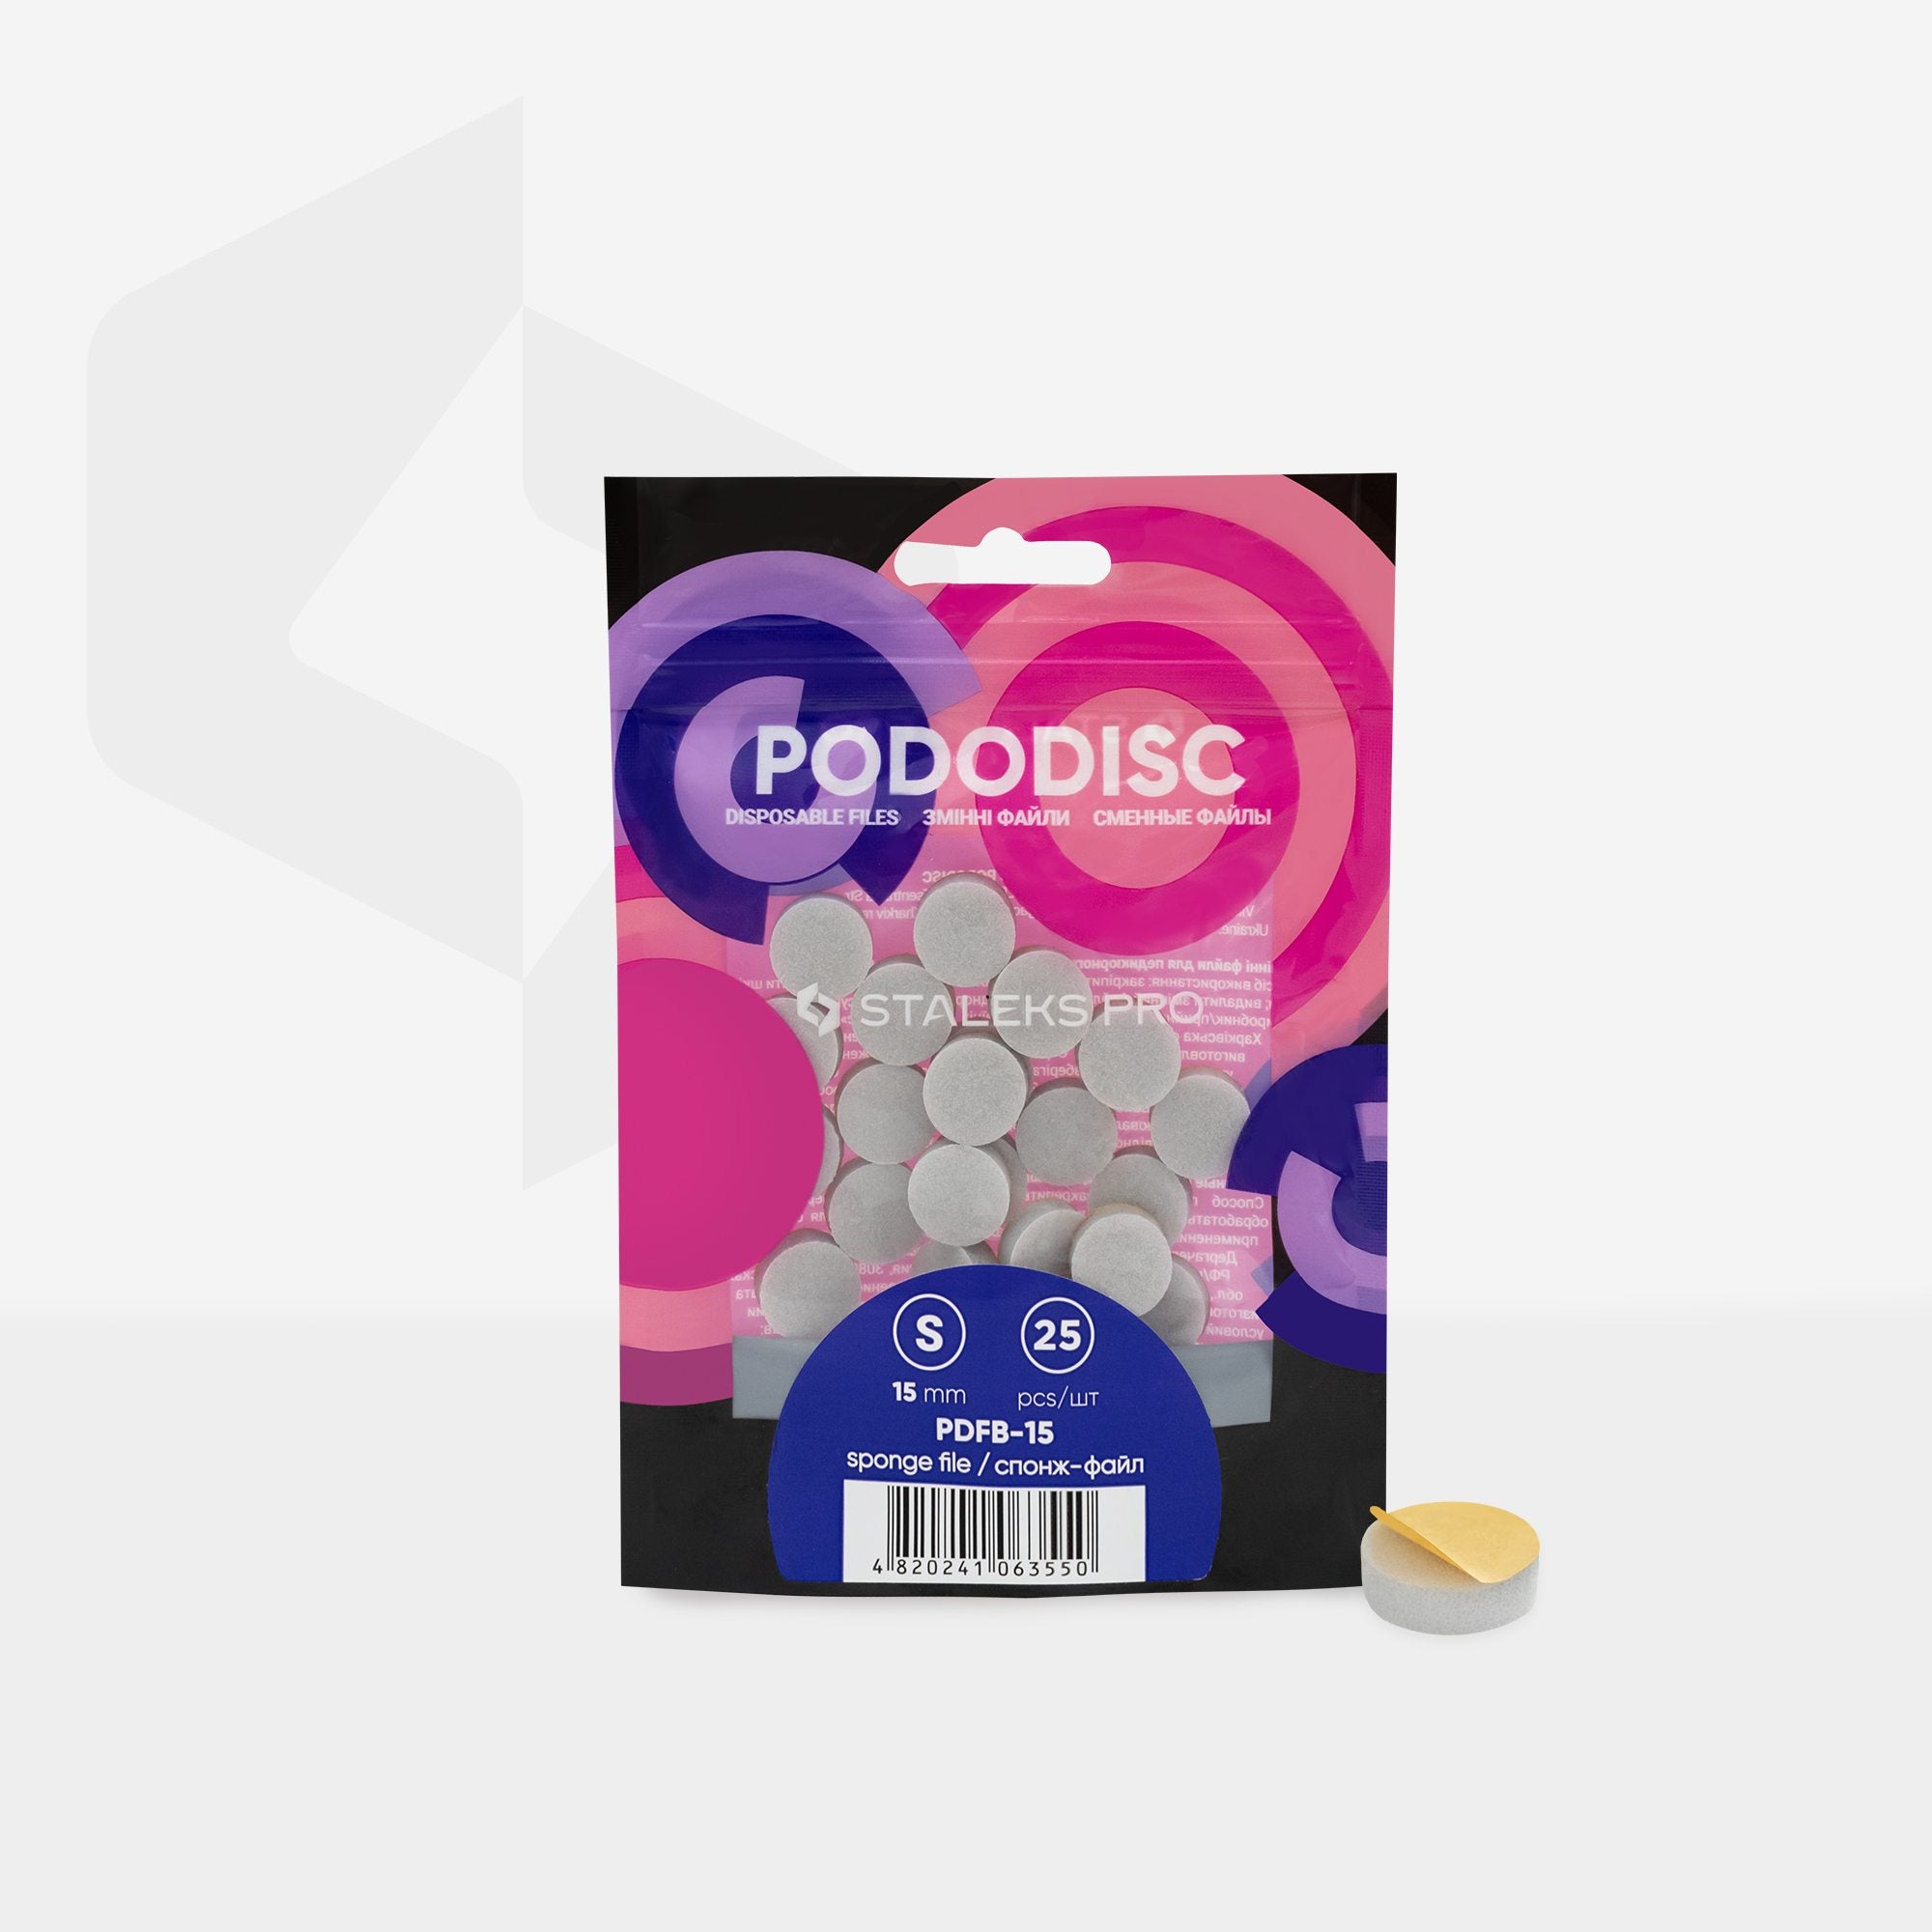 Pile-bureti de unica folosinta pentru disc pedichiura PODODISC STALEKS PRO S (25 buc)